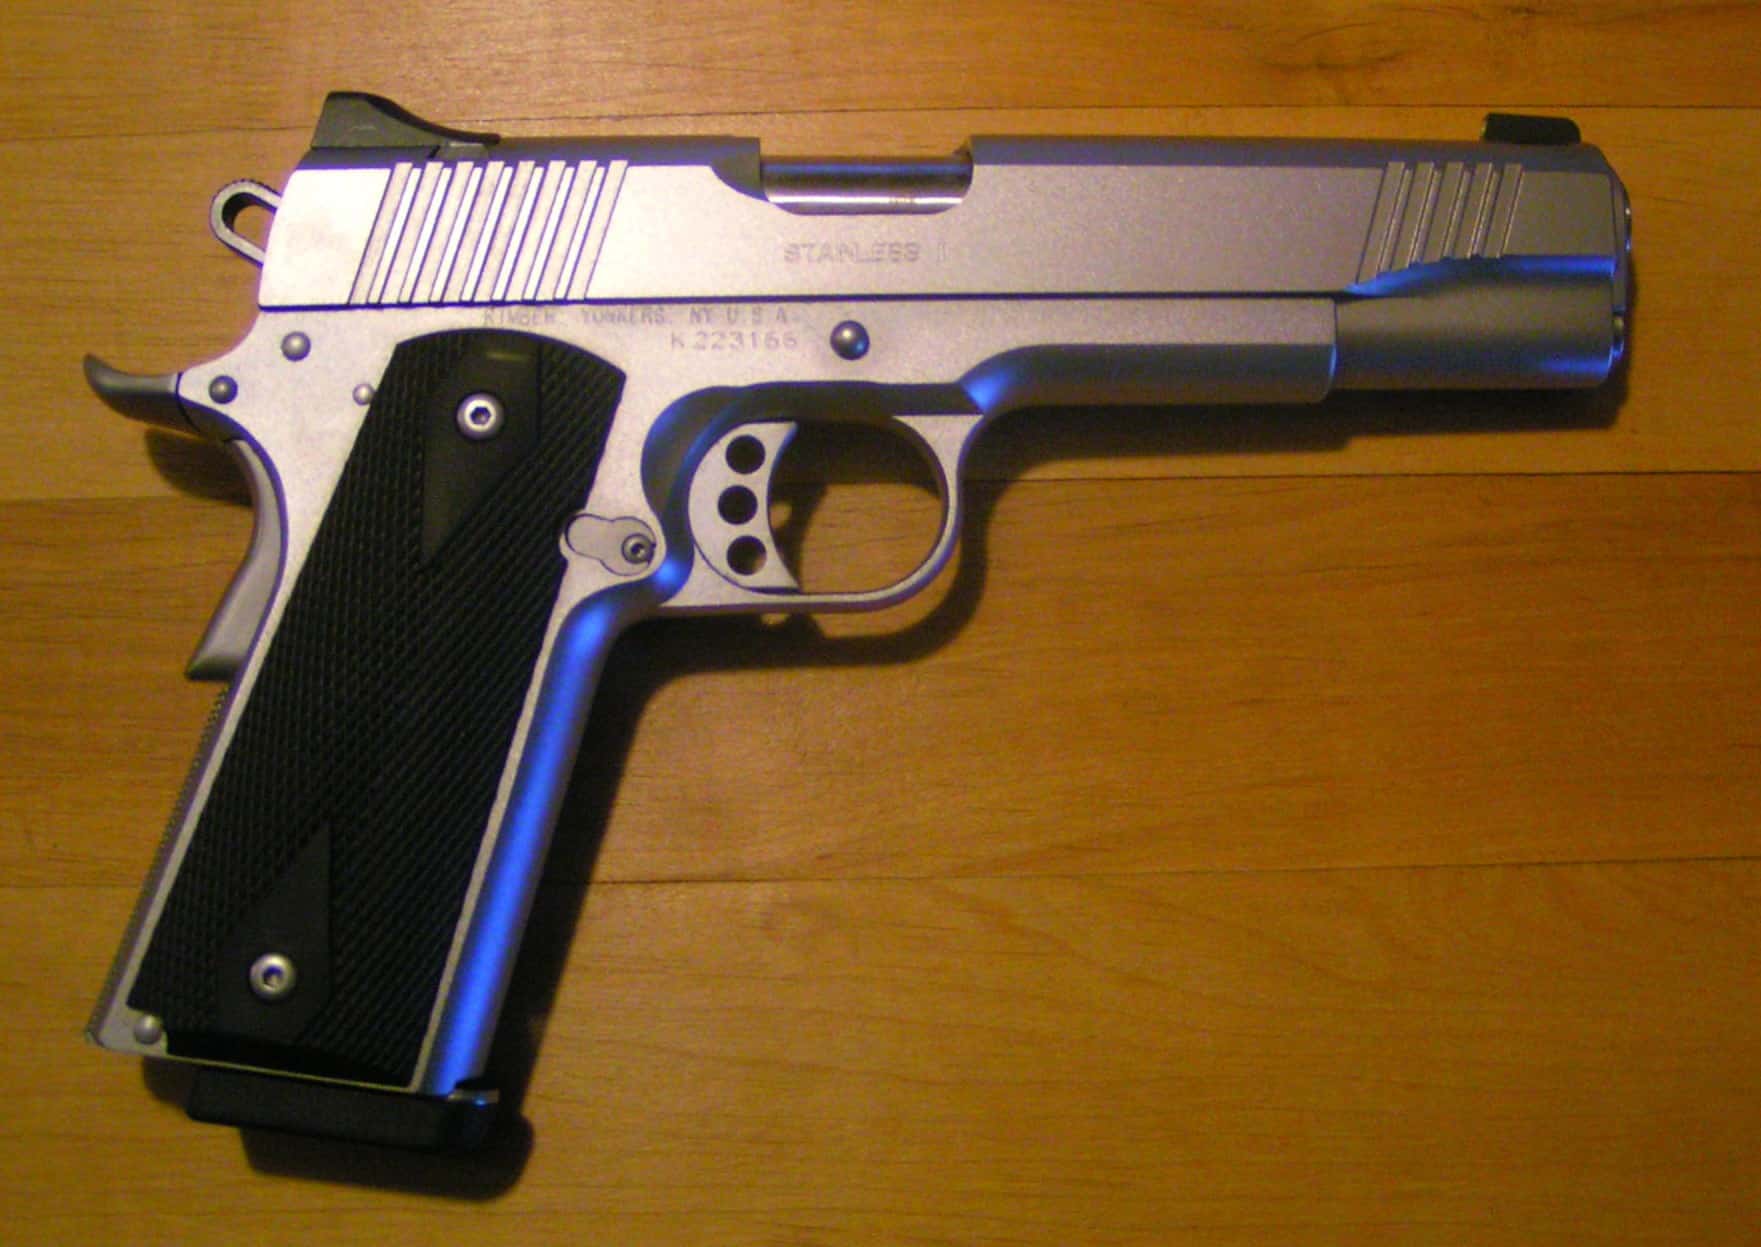 Kimber Custom Stainless pistol by User:Kroush, Public domain, via Wikimedia Commons